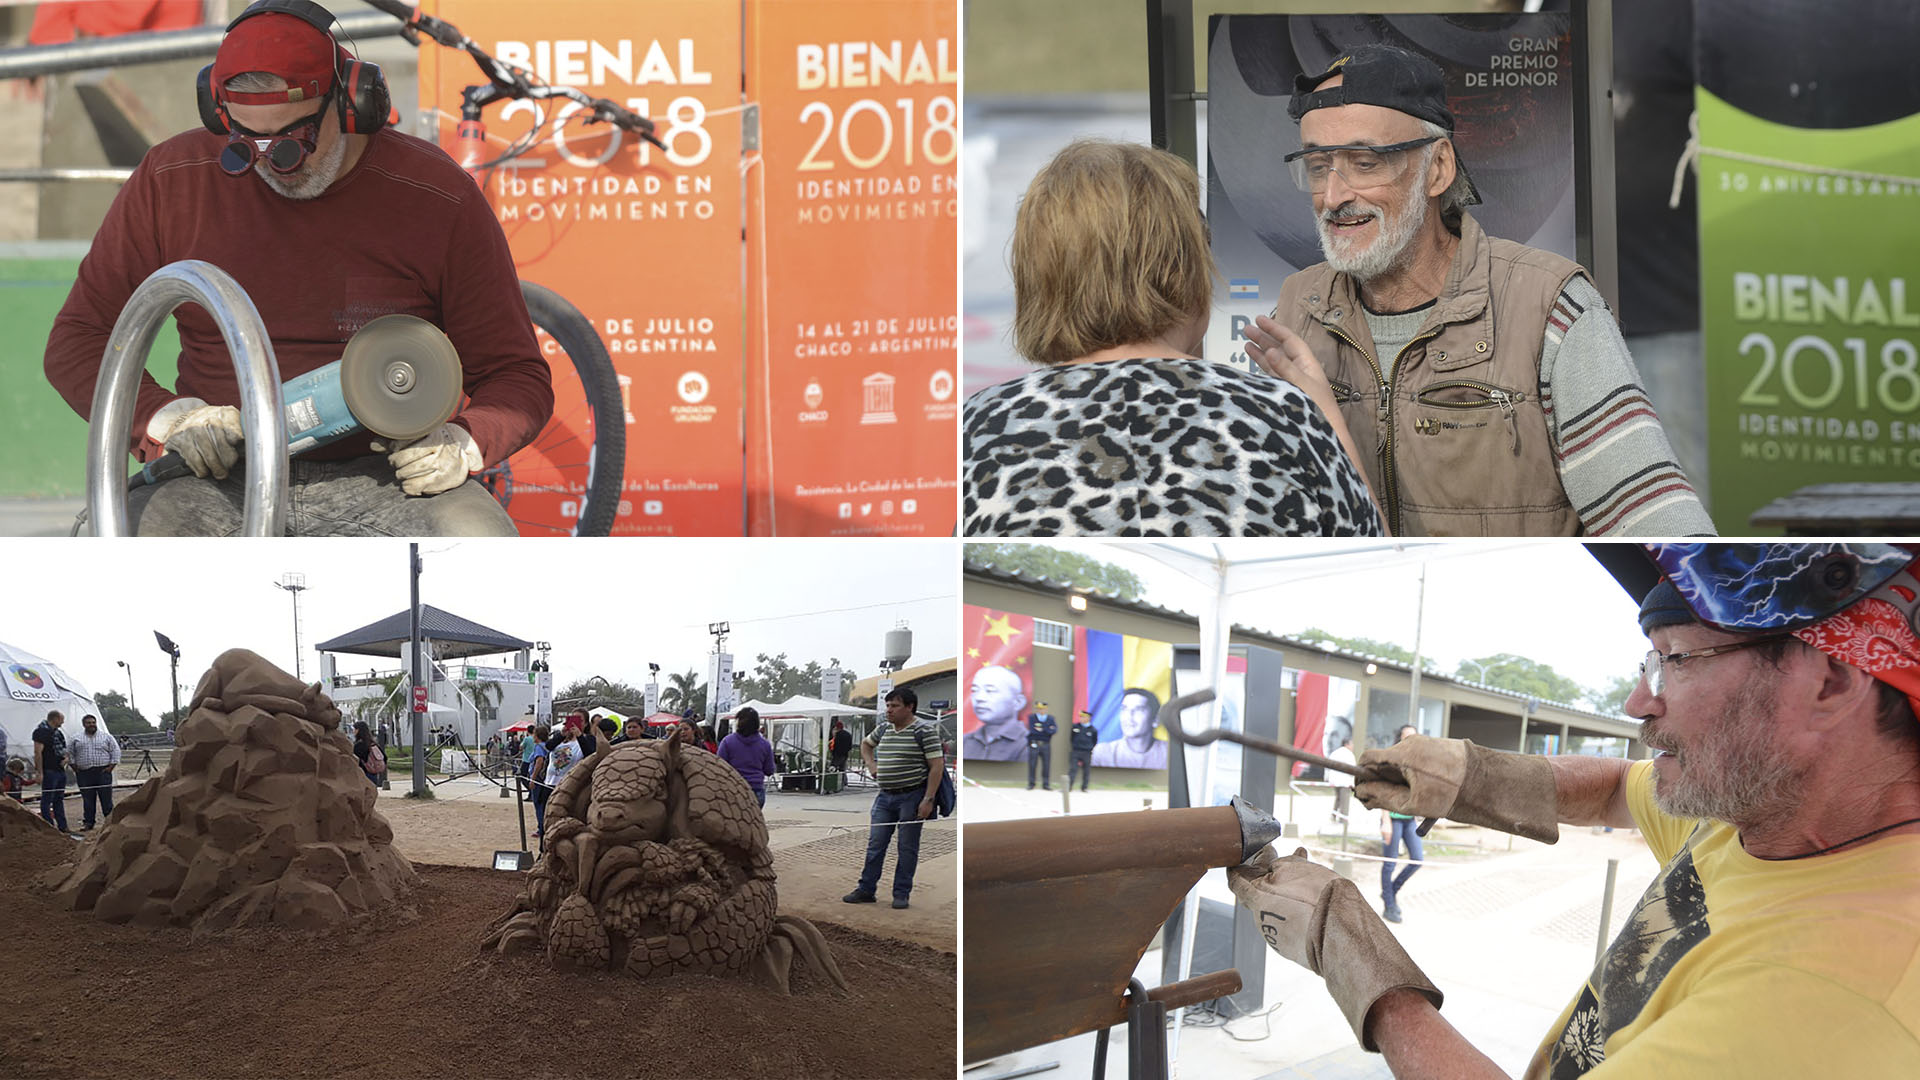 Variedad de actividades en la Bienal: escultores trabajando y dialogando con el público en una pausa. Escultura en arena y competencias paralelas